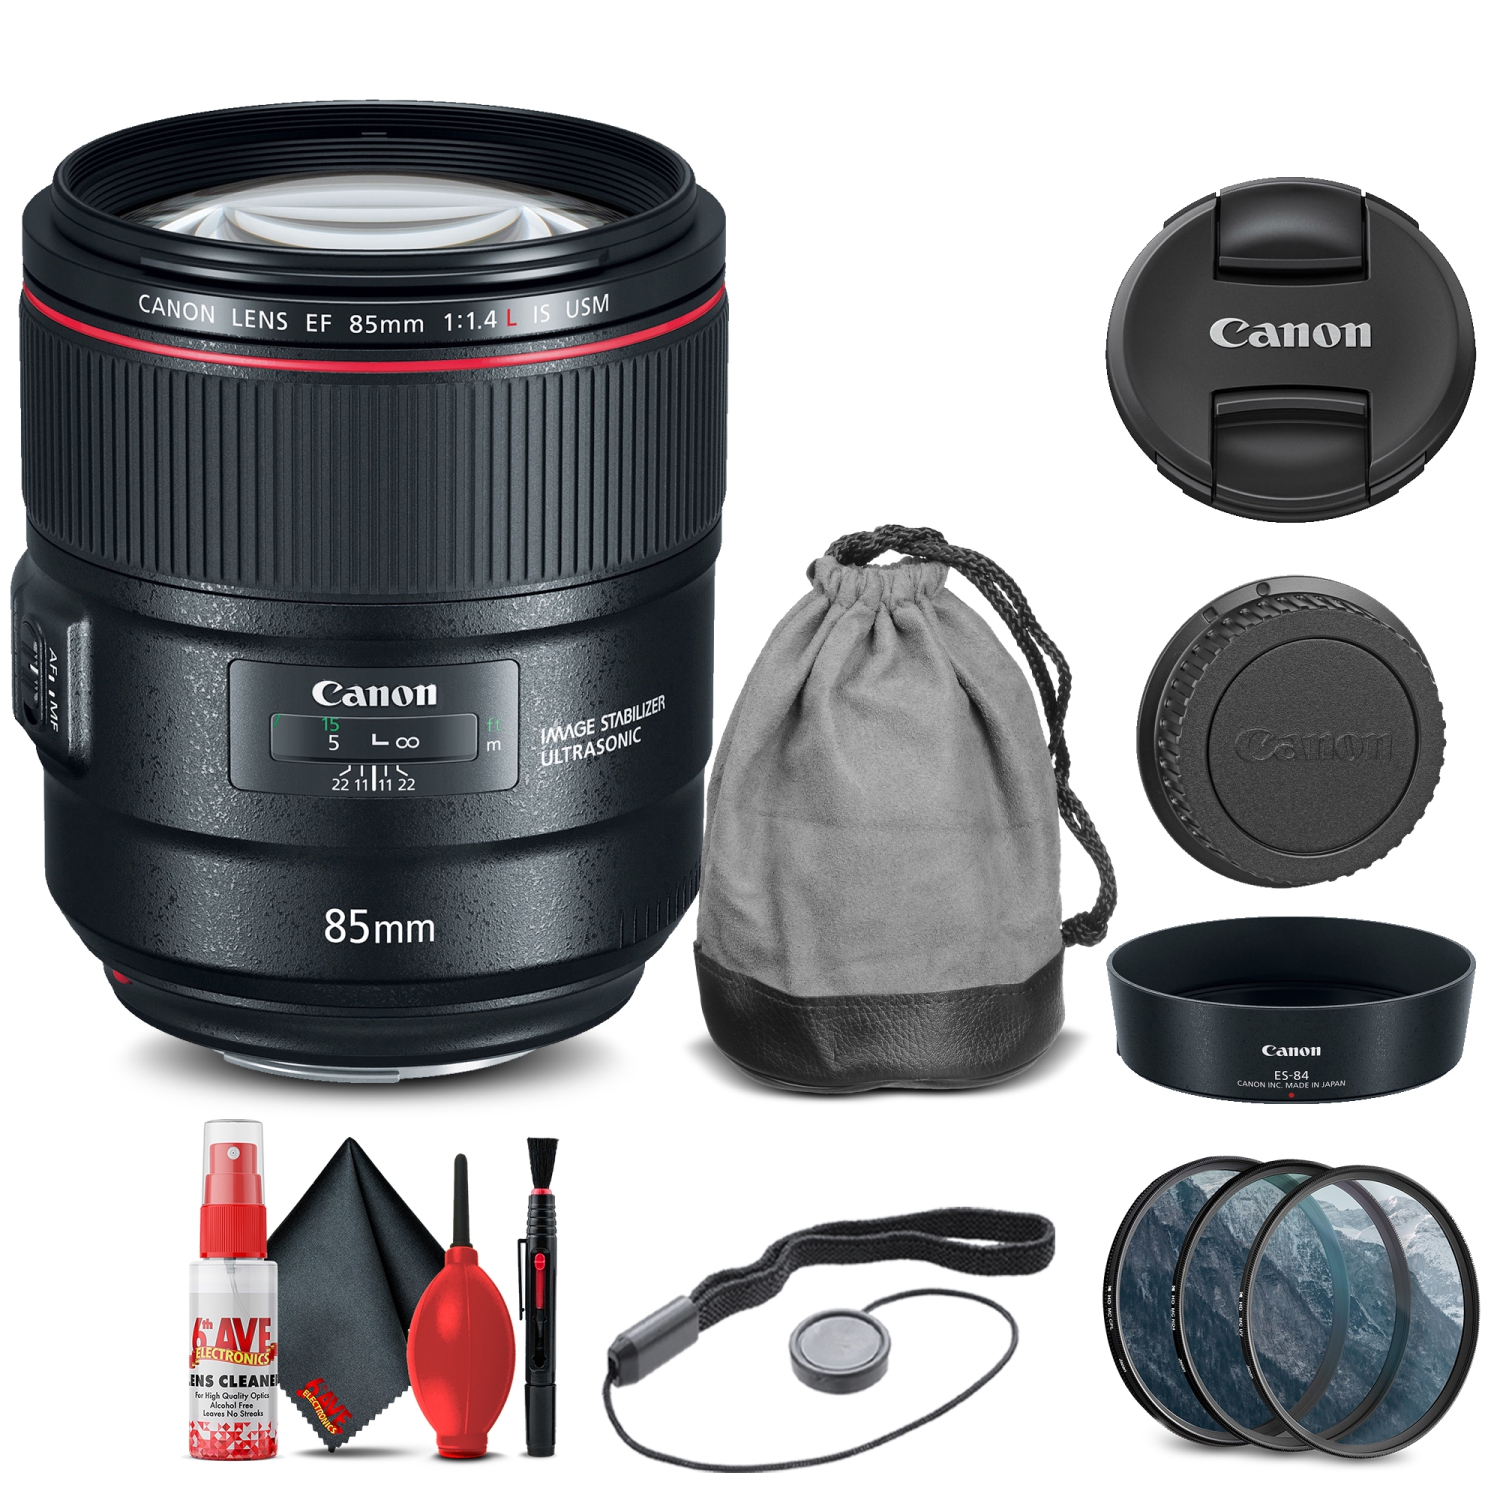 Canon EF 85mm f/1.4L IS USM Lens (2271C002) + Filter Kit + Cap Keeper Base Bundle